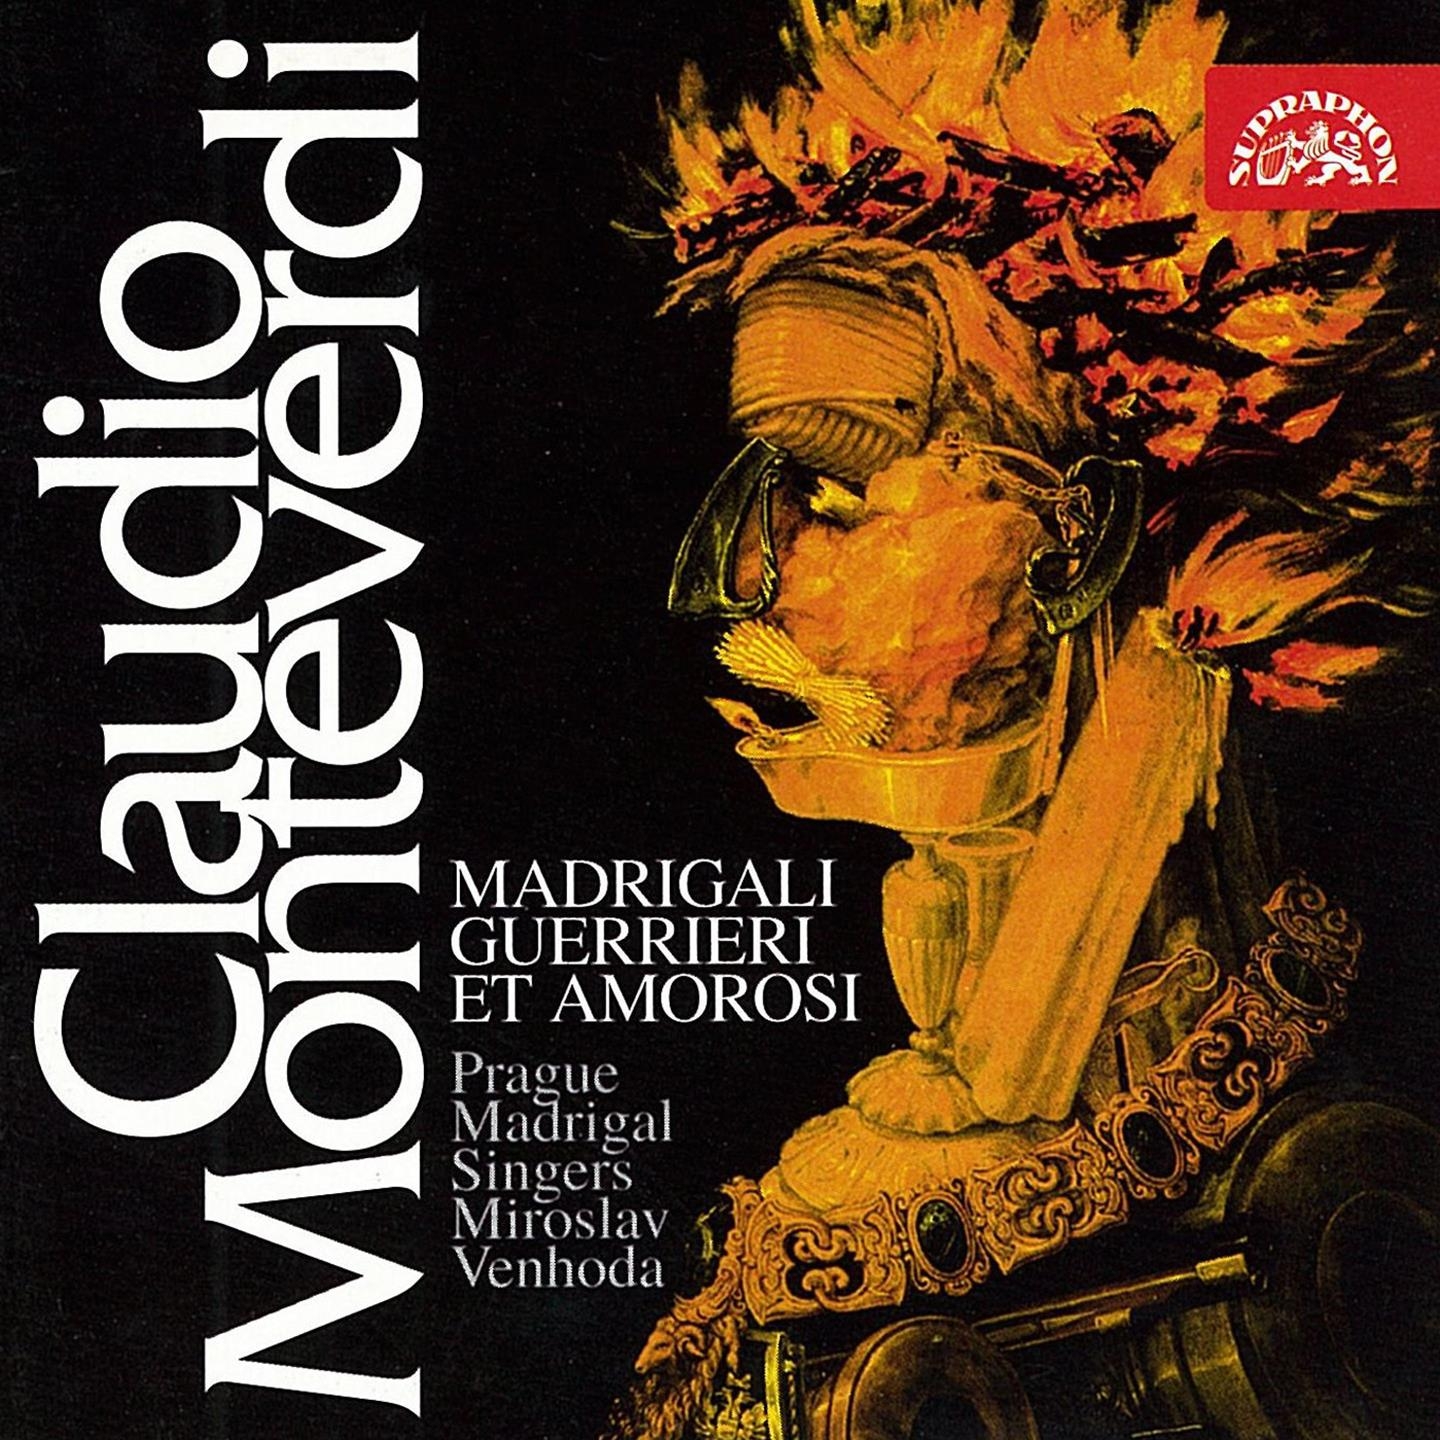 Monteverdi: madrigalli guerrieri et amorosi